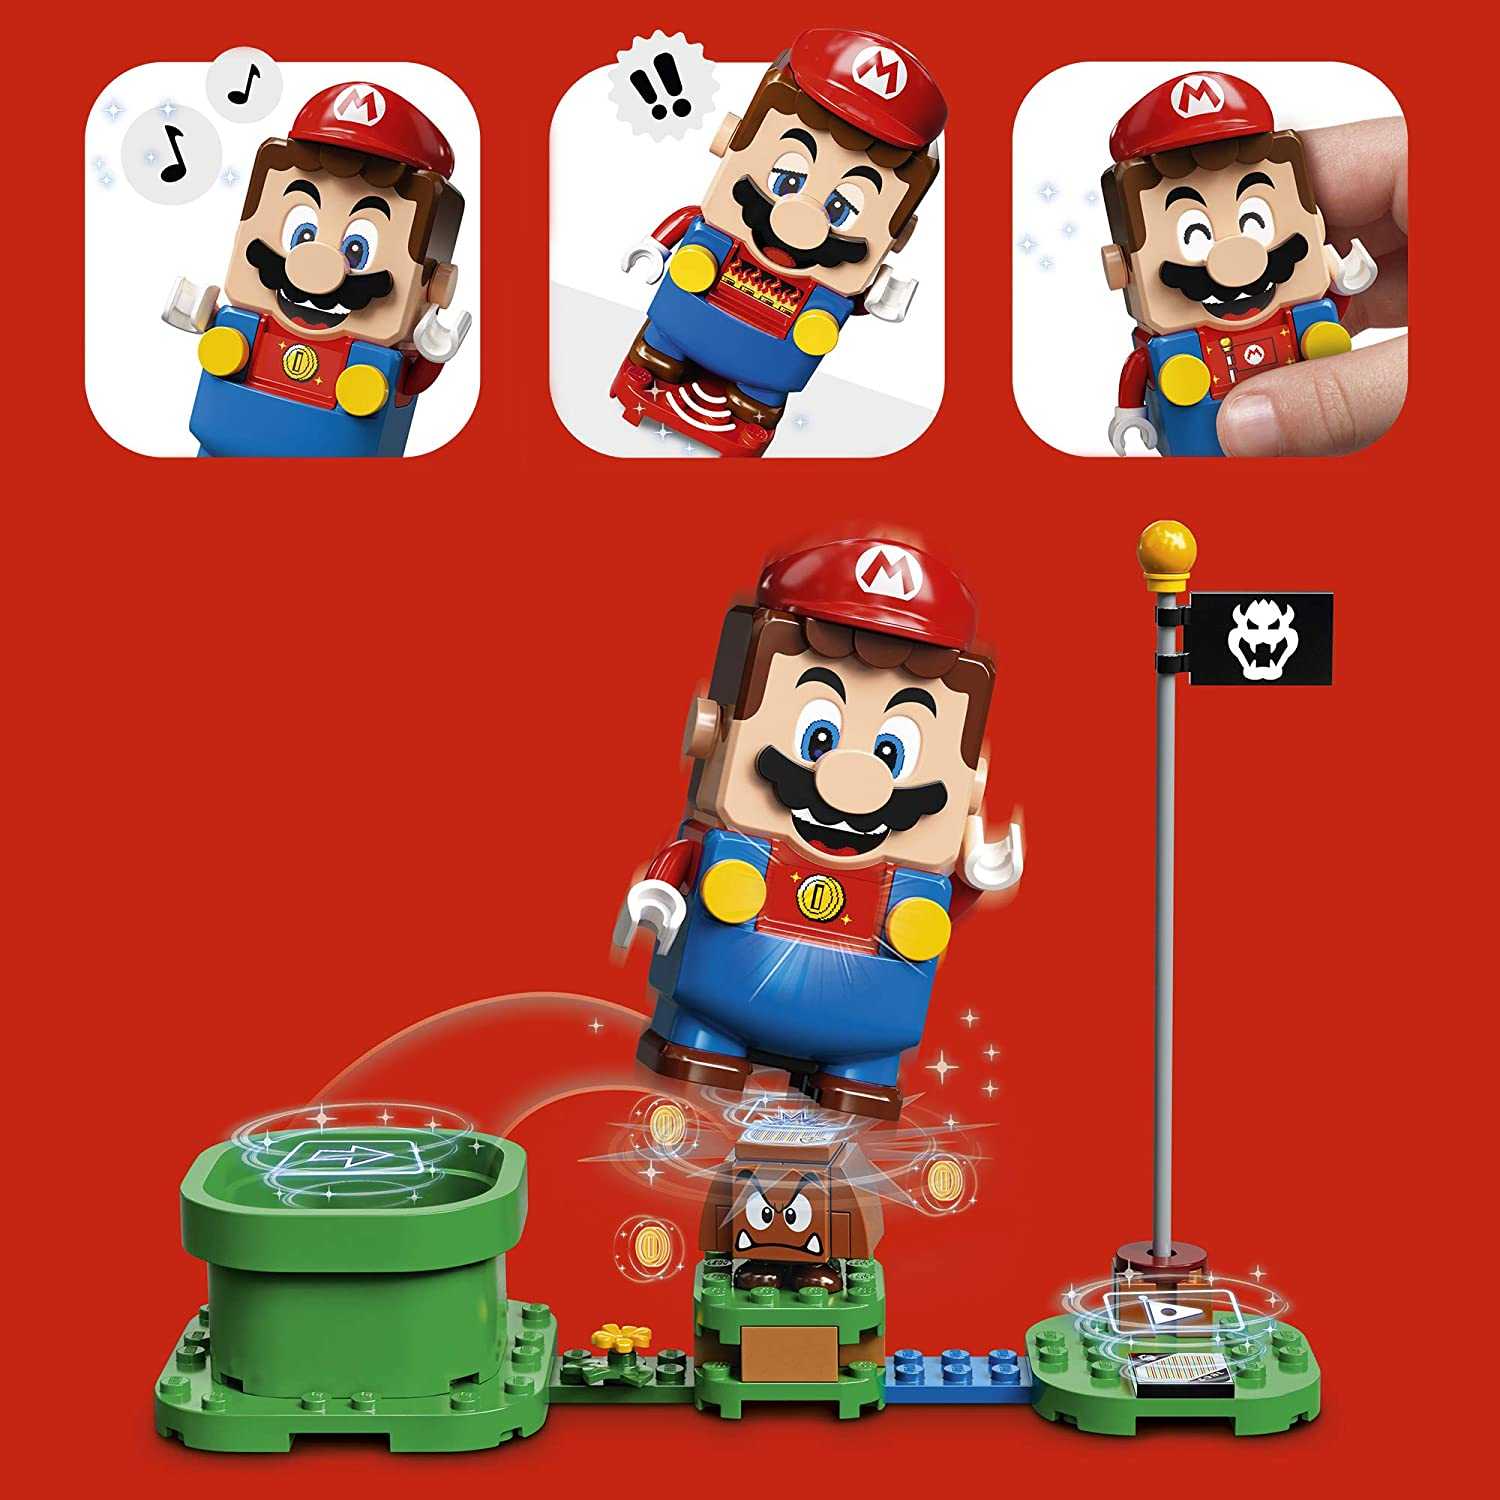 樂高 LEGO 積木 Super Mario 超級瑪利歐 冒險主機 71360 現貨代理